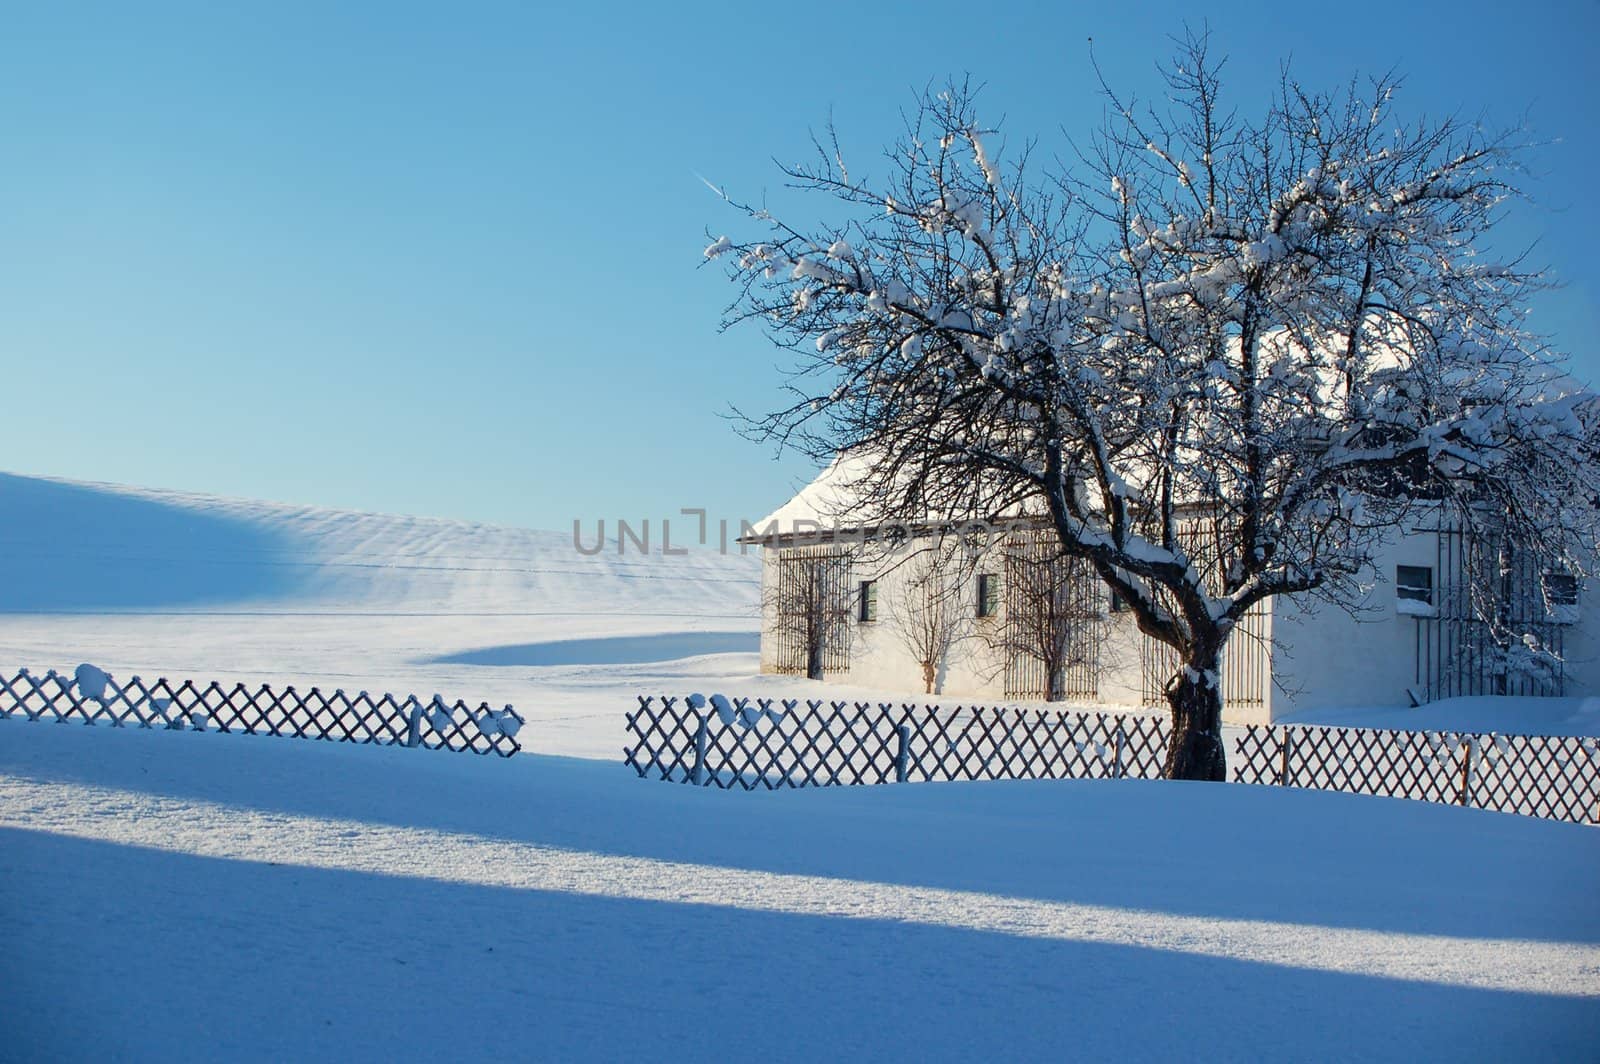 Farm in Winter Landscape, taken in Austria